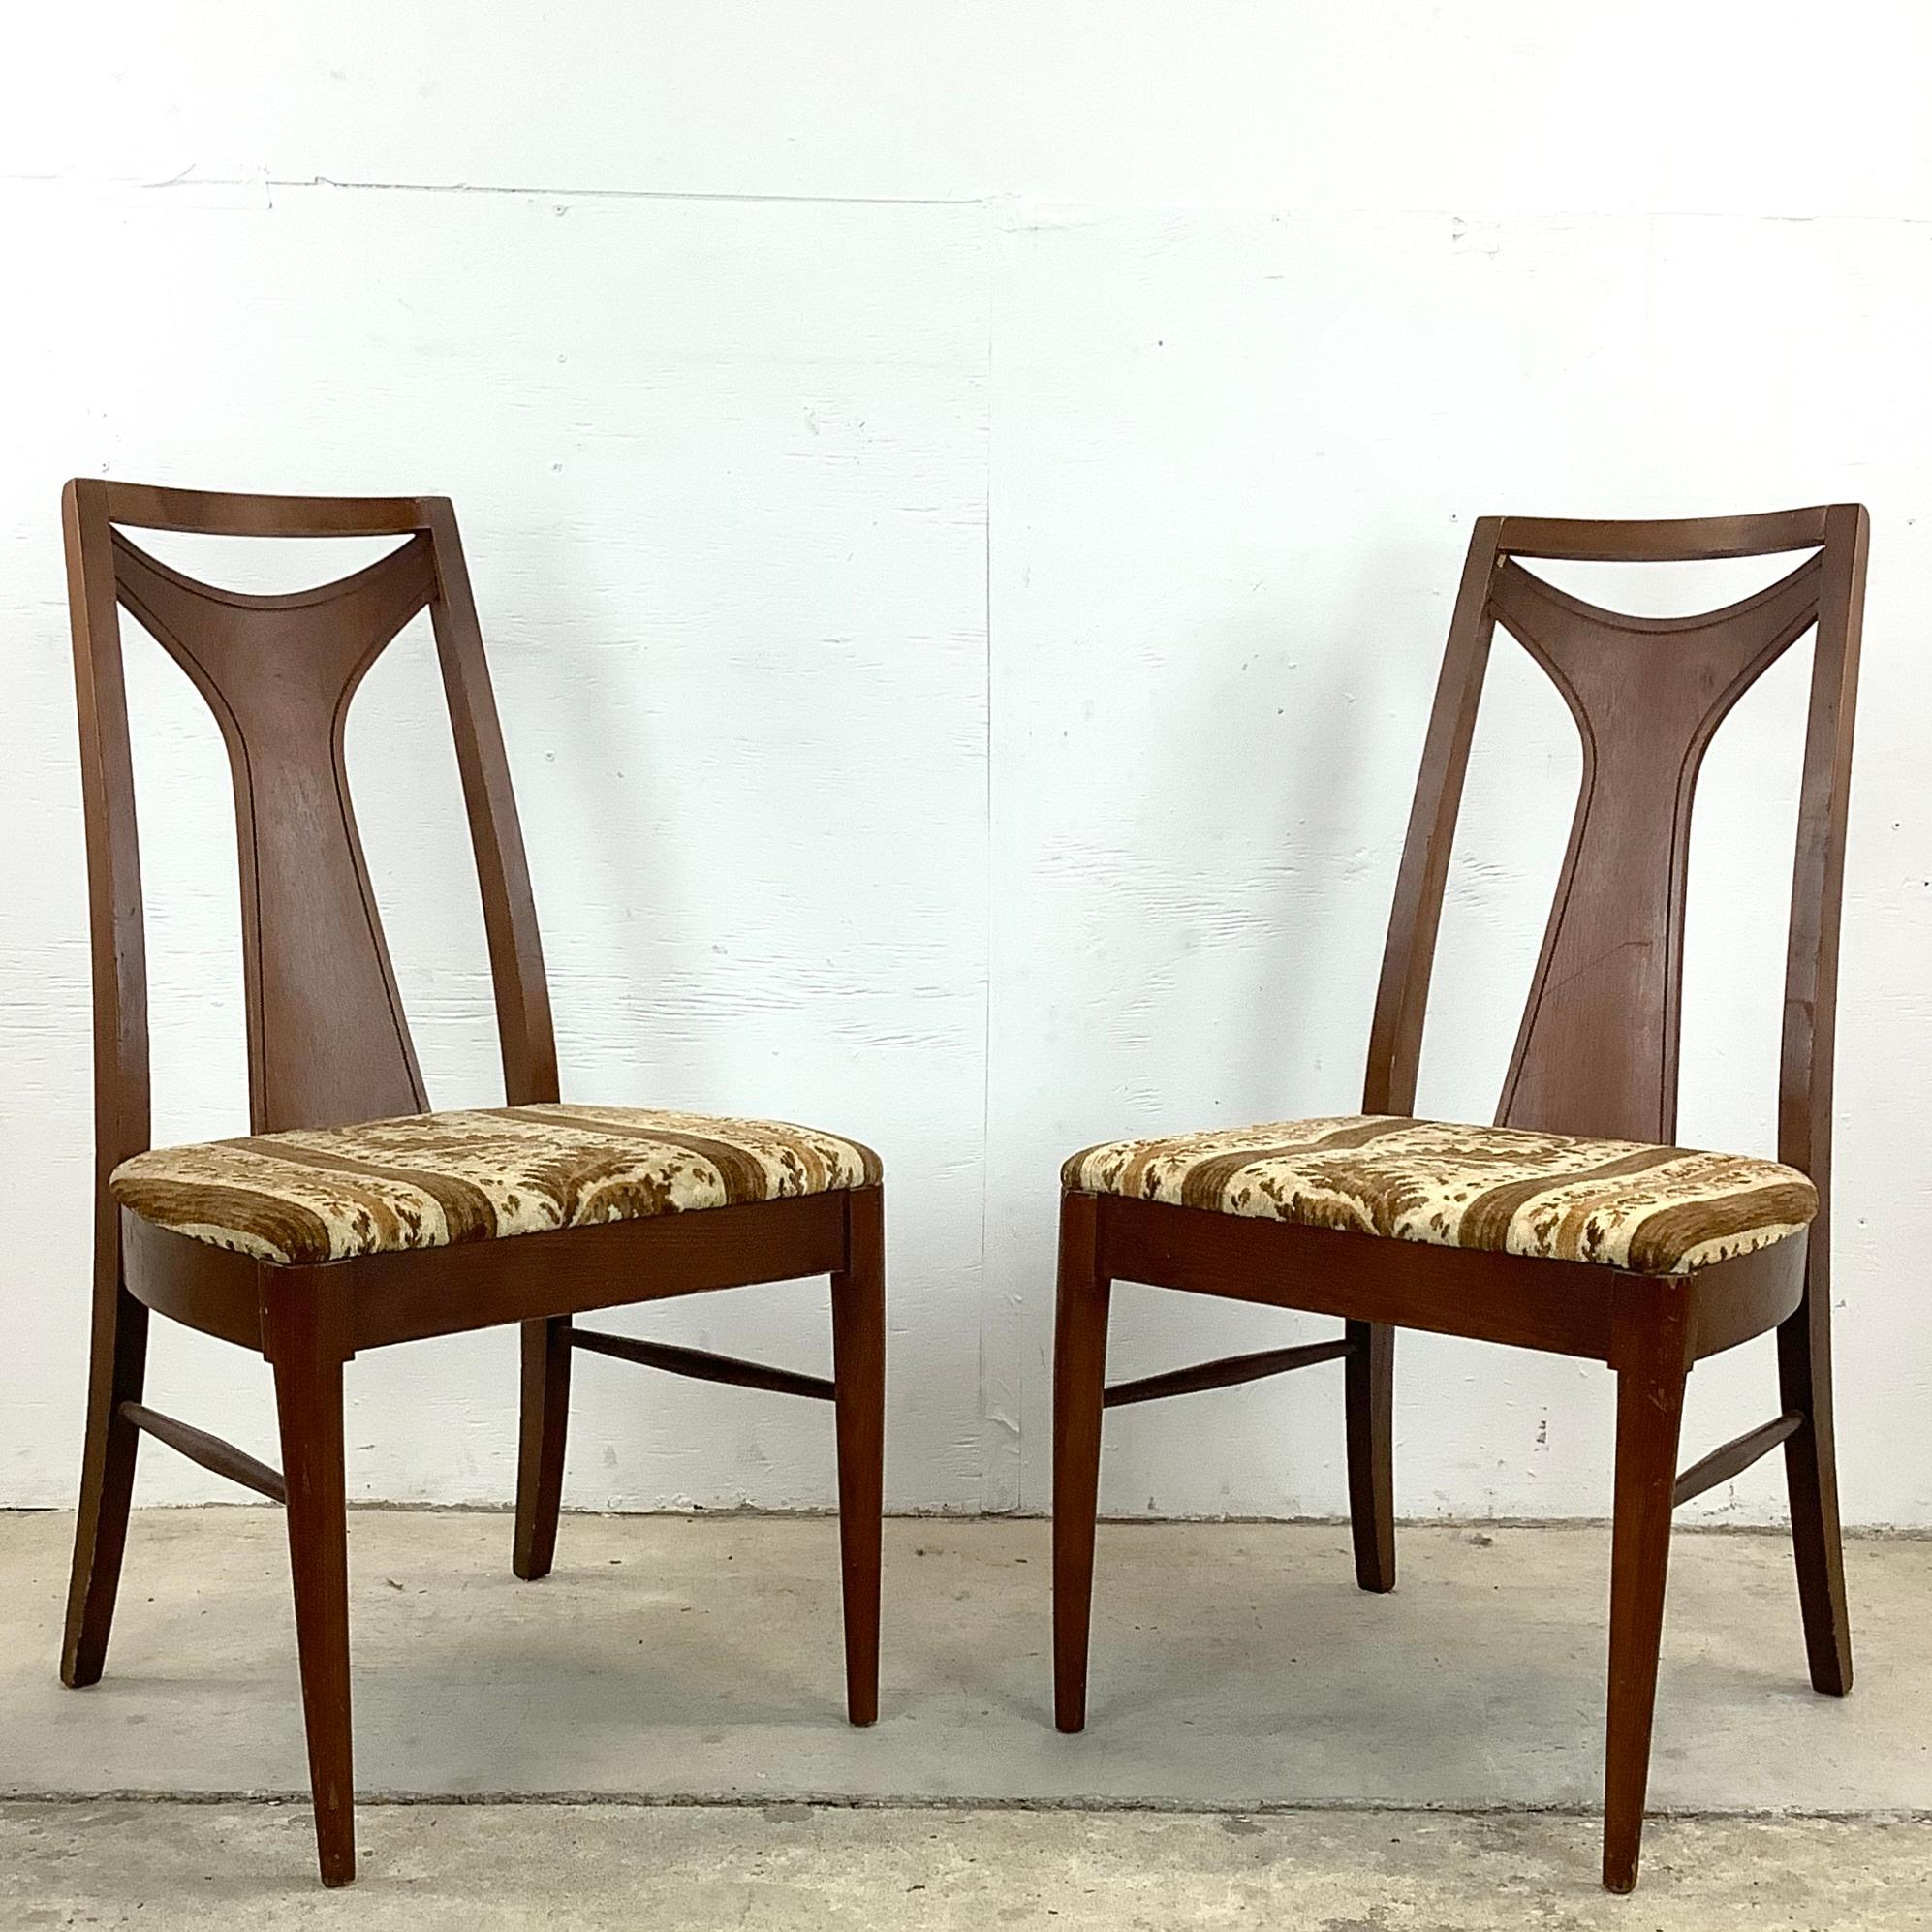 Genießen Sie die Verschmelzung von Form und Funktion mit diesem eleganten Paar Mid-Century Modern Dining Chairs. Diese Stühle, die jedes Esszimmer aufwerten, sind eine wahre Verbeugung vor der Raffinesse und dem innovativen Design der damaligen